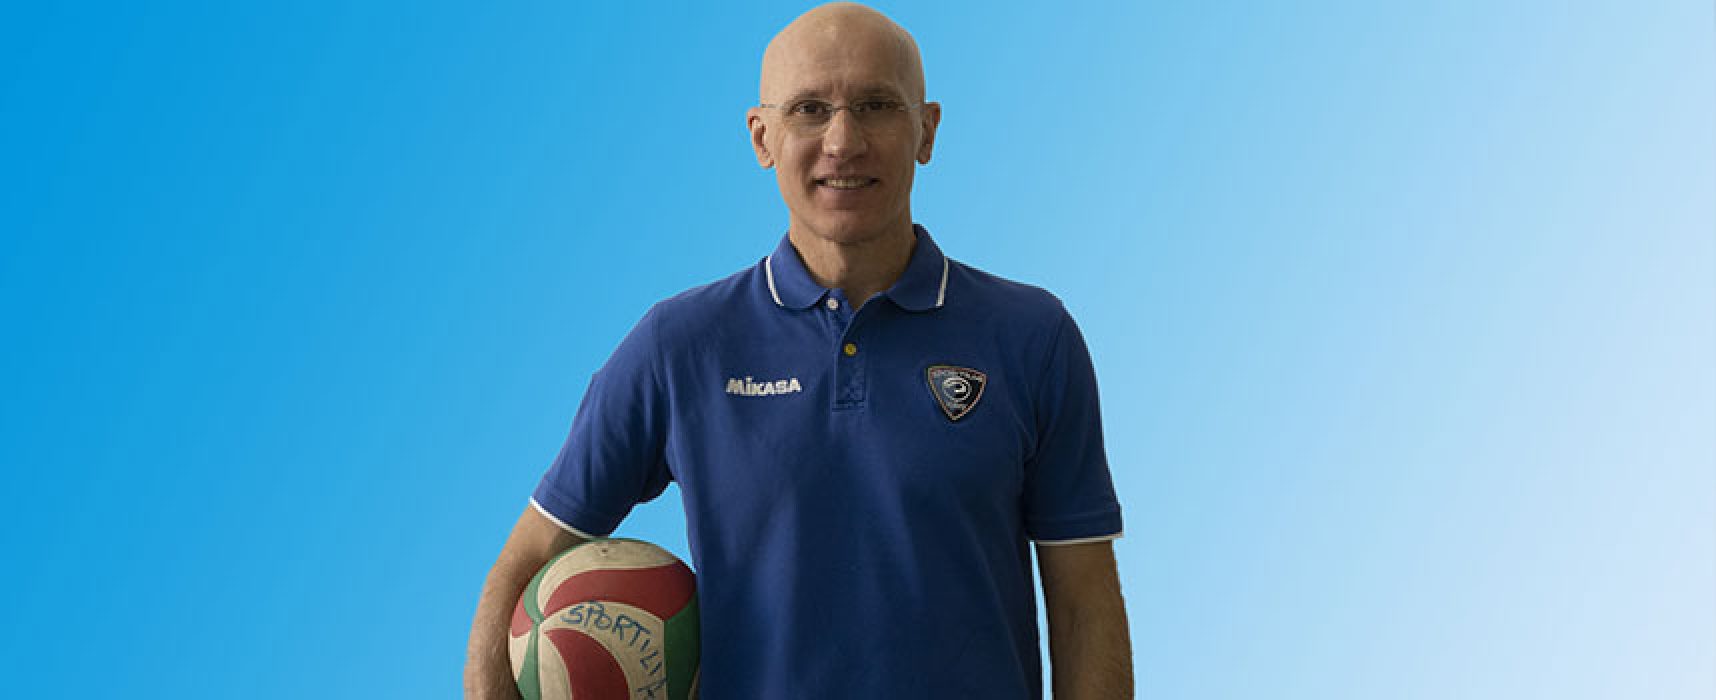 Sportilia Volley riparte da coach Nuzzi: “Due decenni sono tanti, motivazioni sempre altissime”